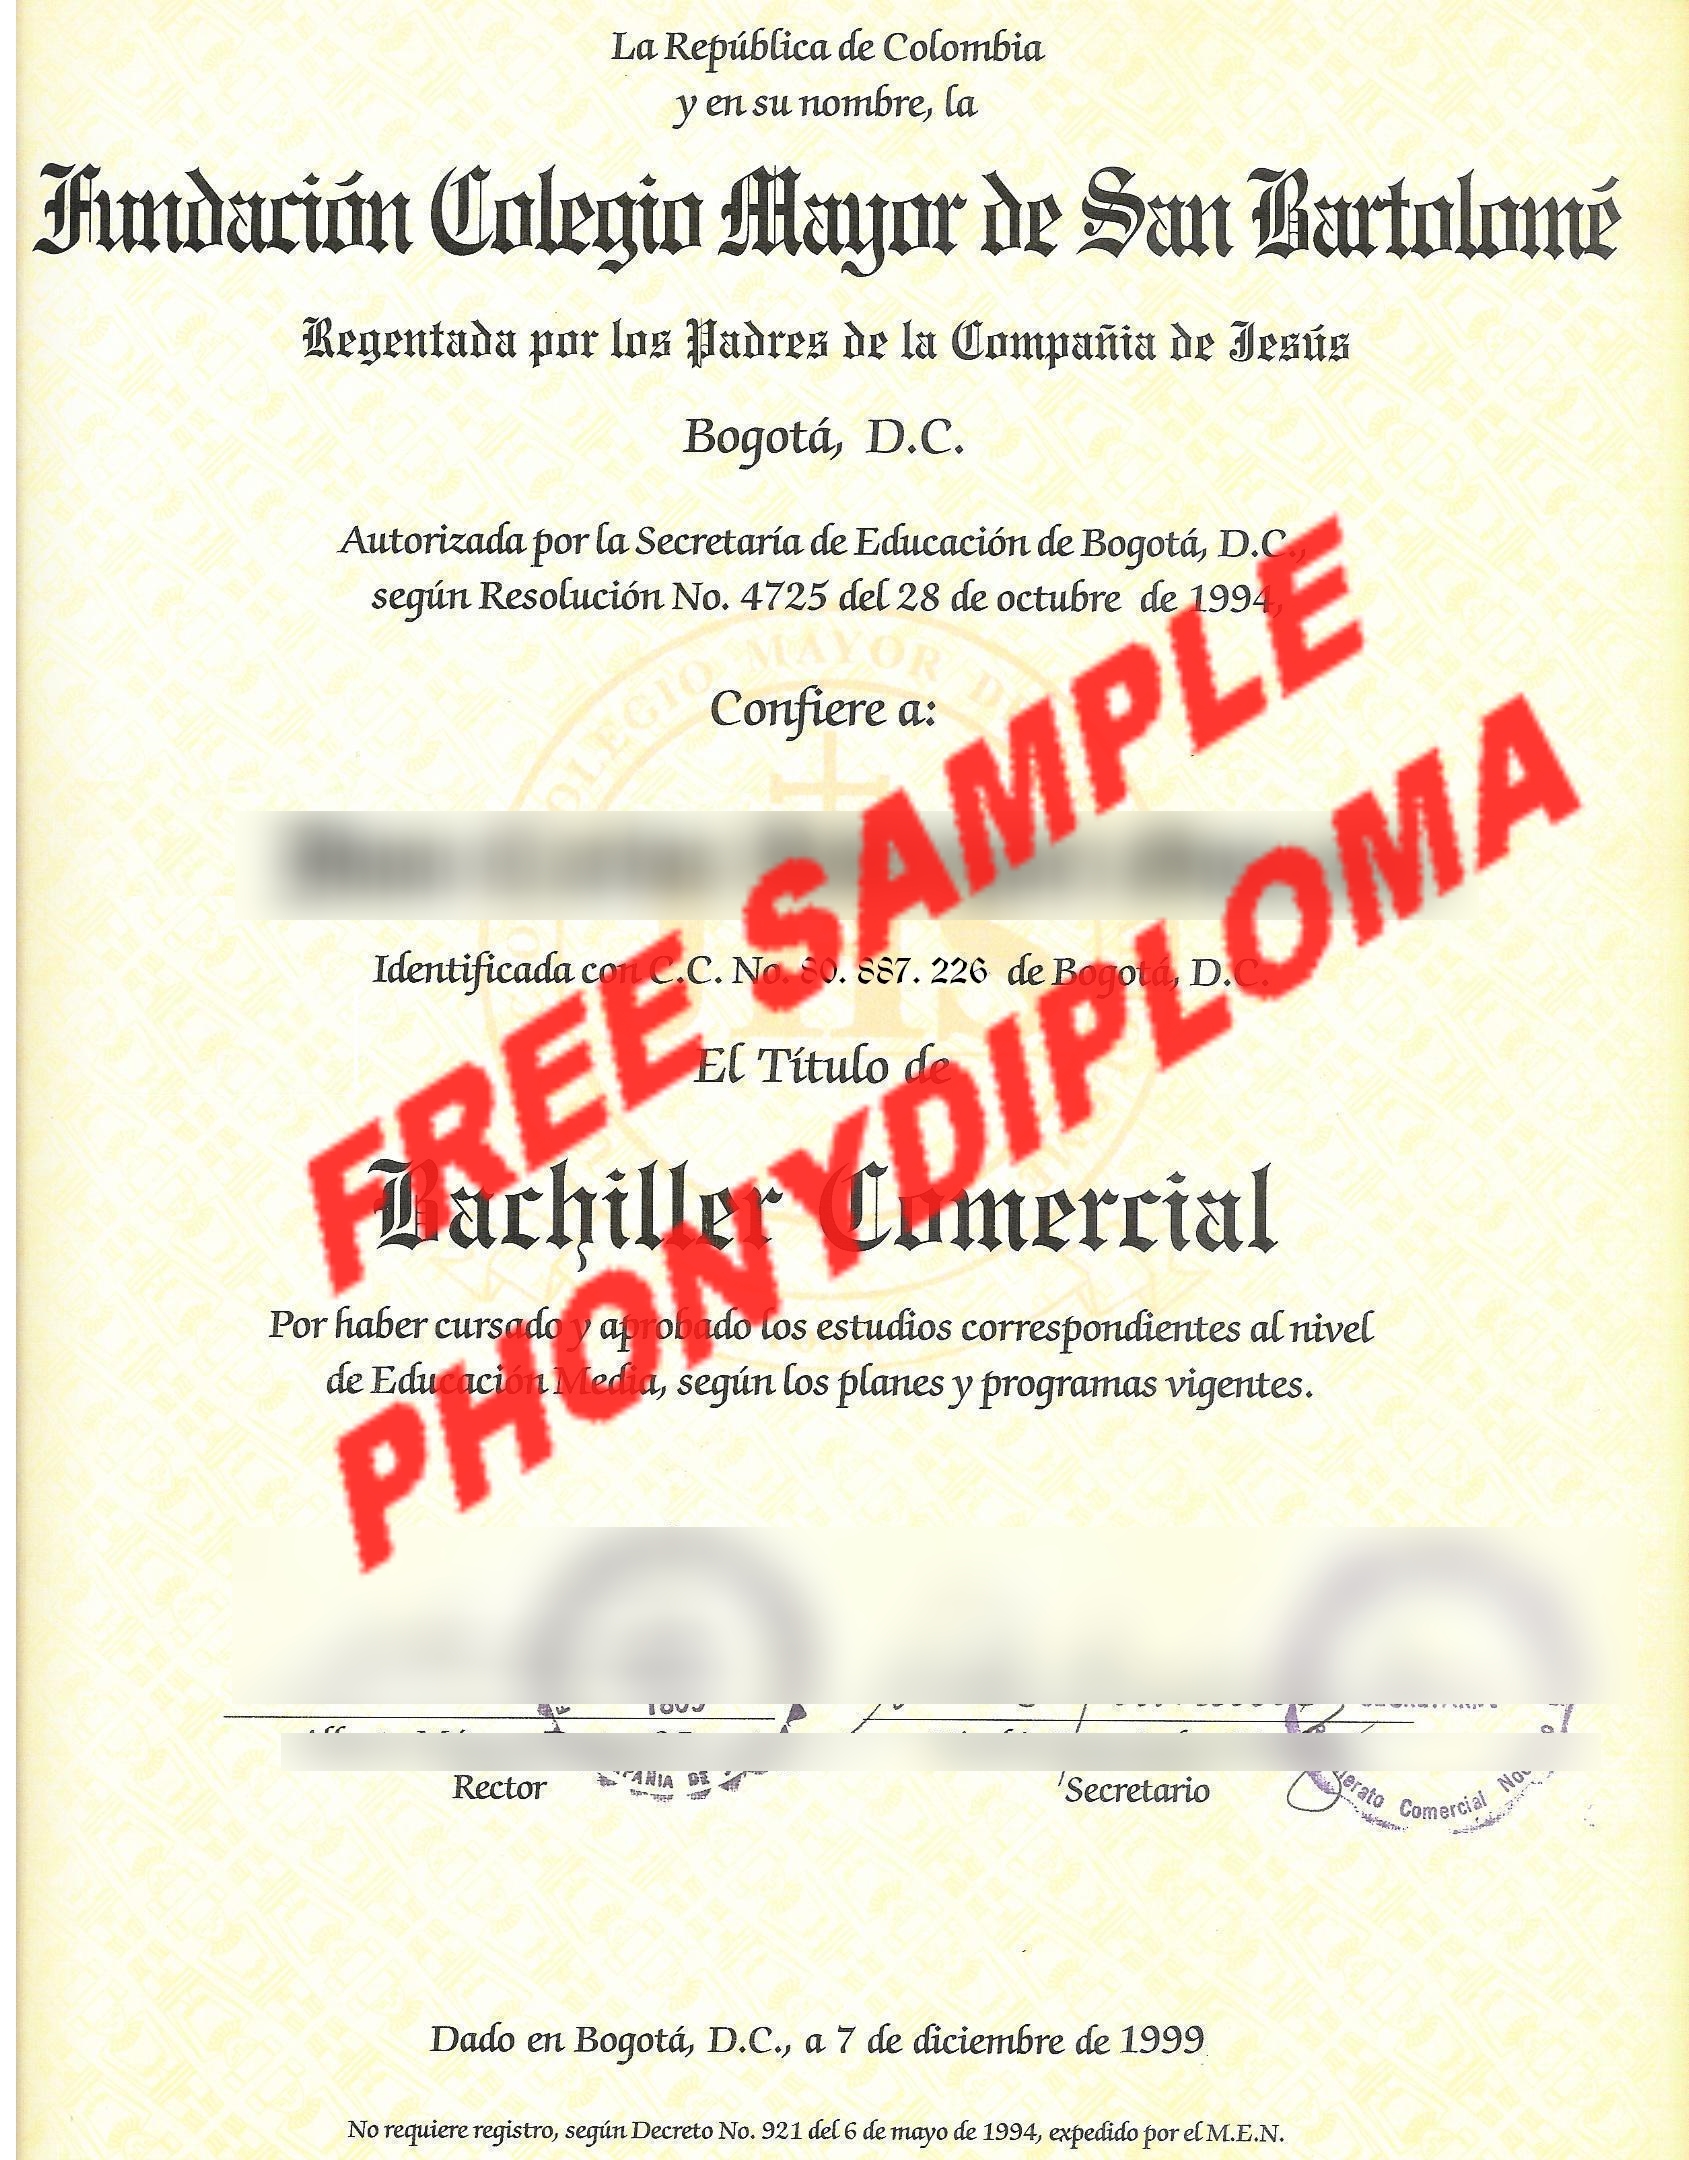 La Republica De Columbia Free Sample From Phonydiploma